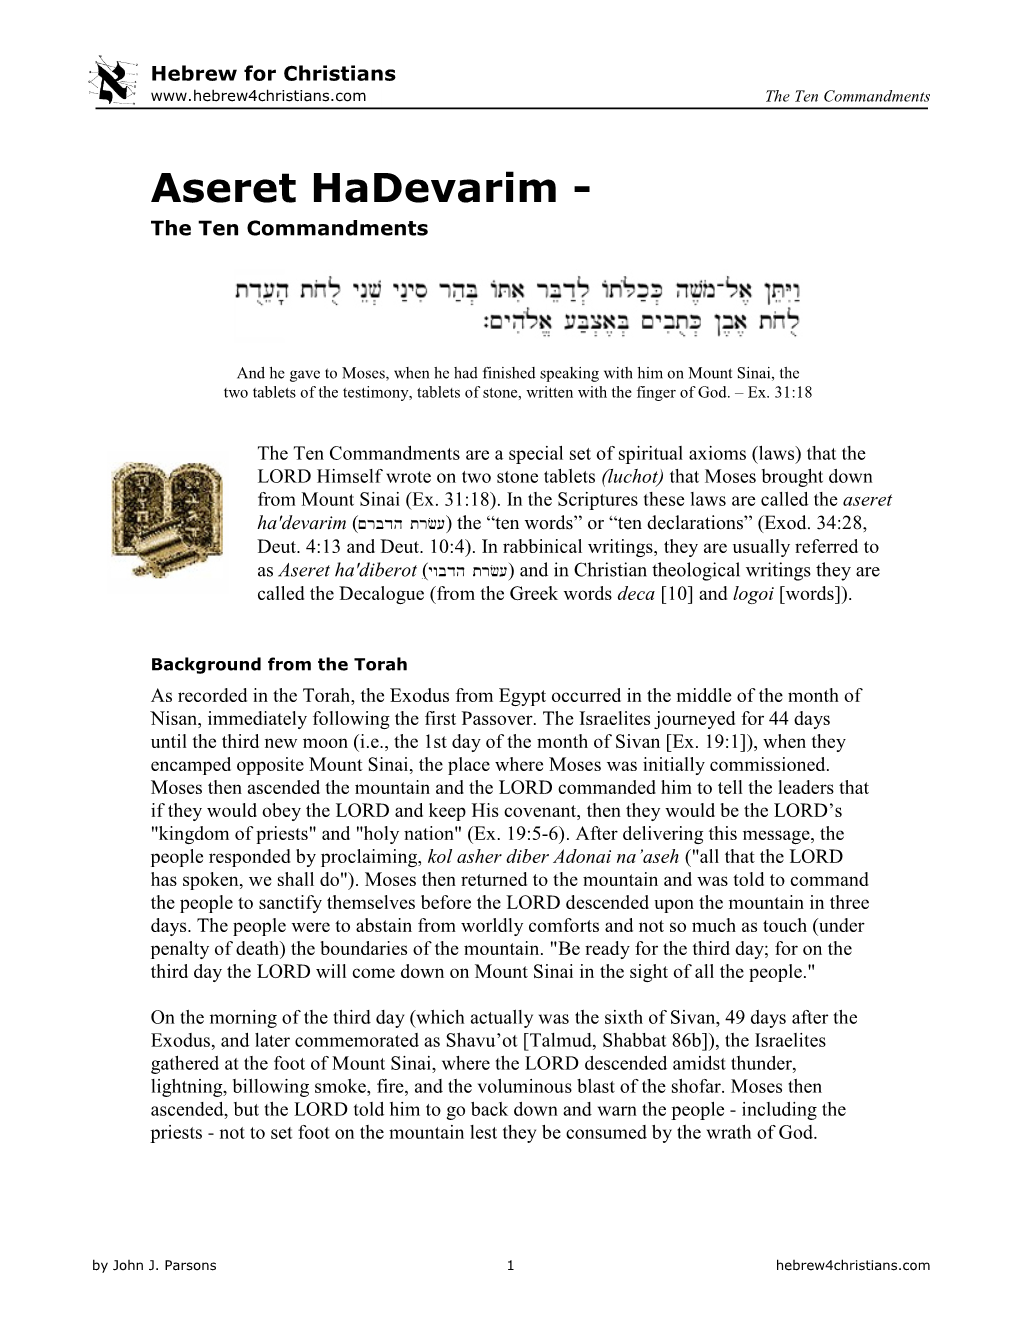 Aseret Hadevarim - the Ten Commandments